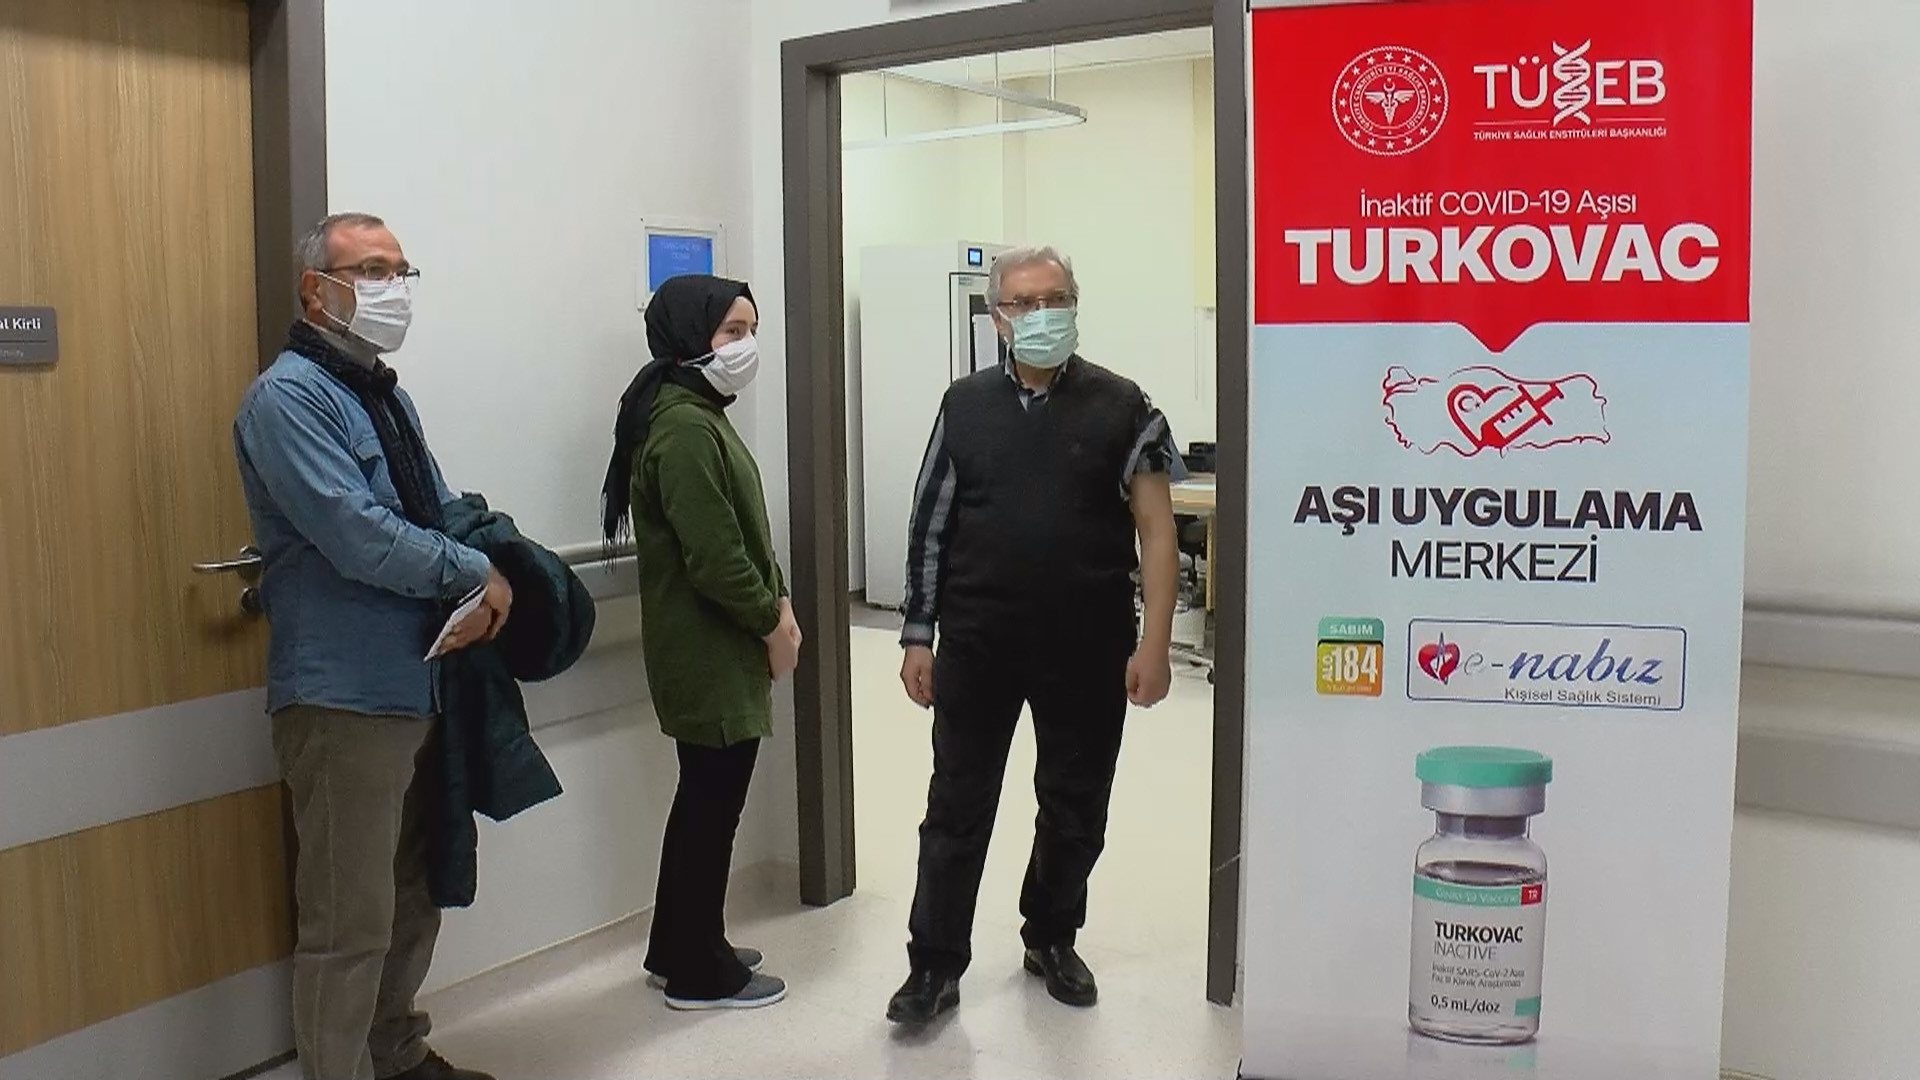 Turkovac aşısı İstanbul'da yapılmaya başlandı.